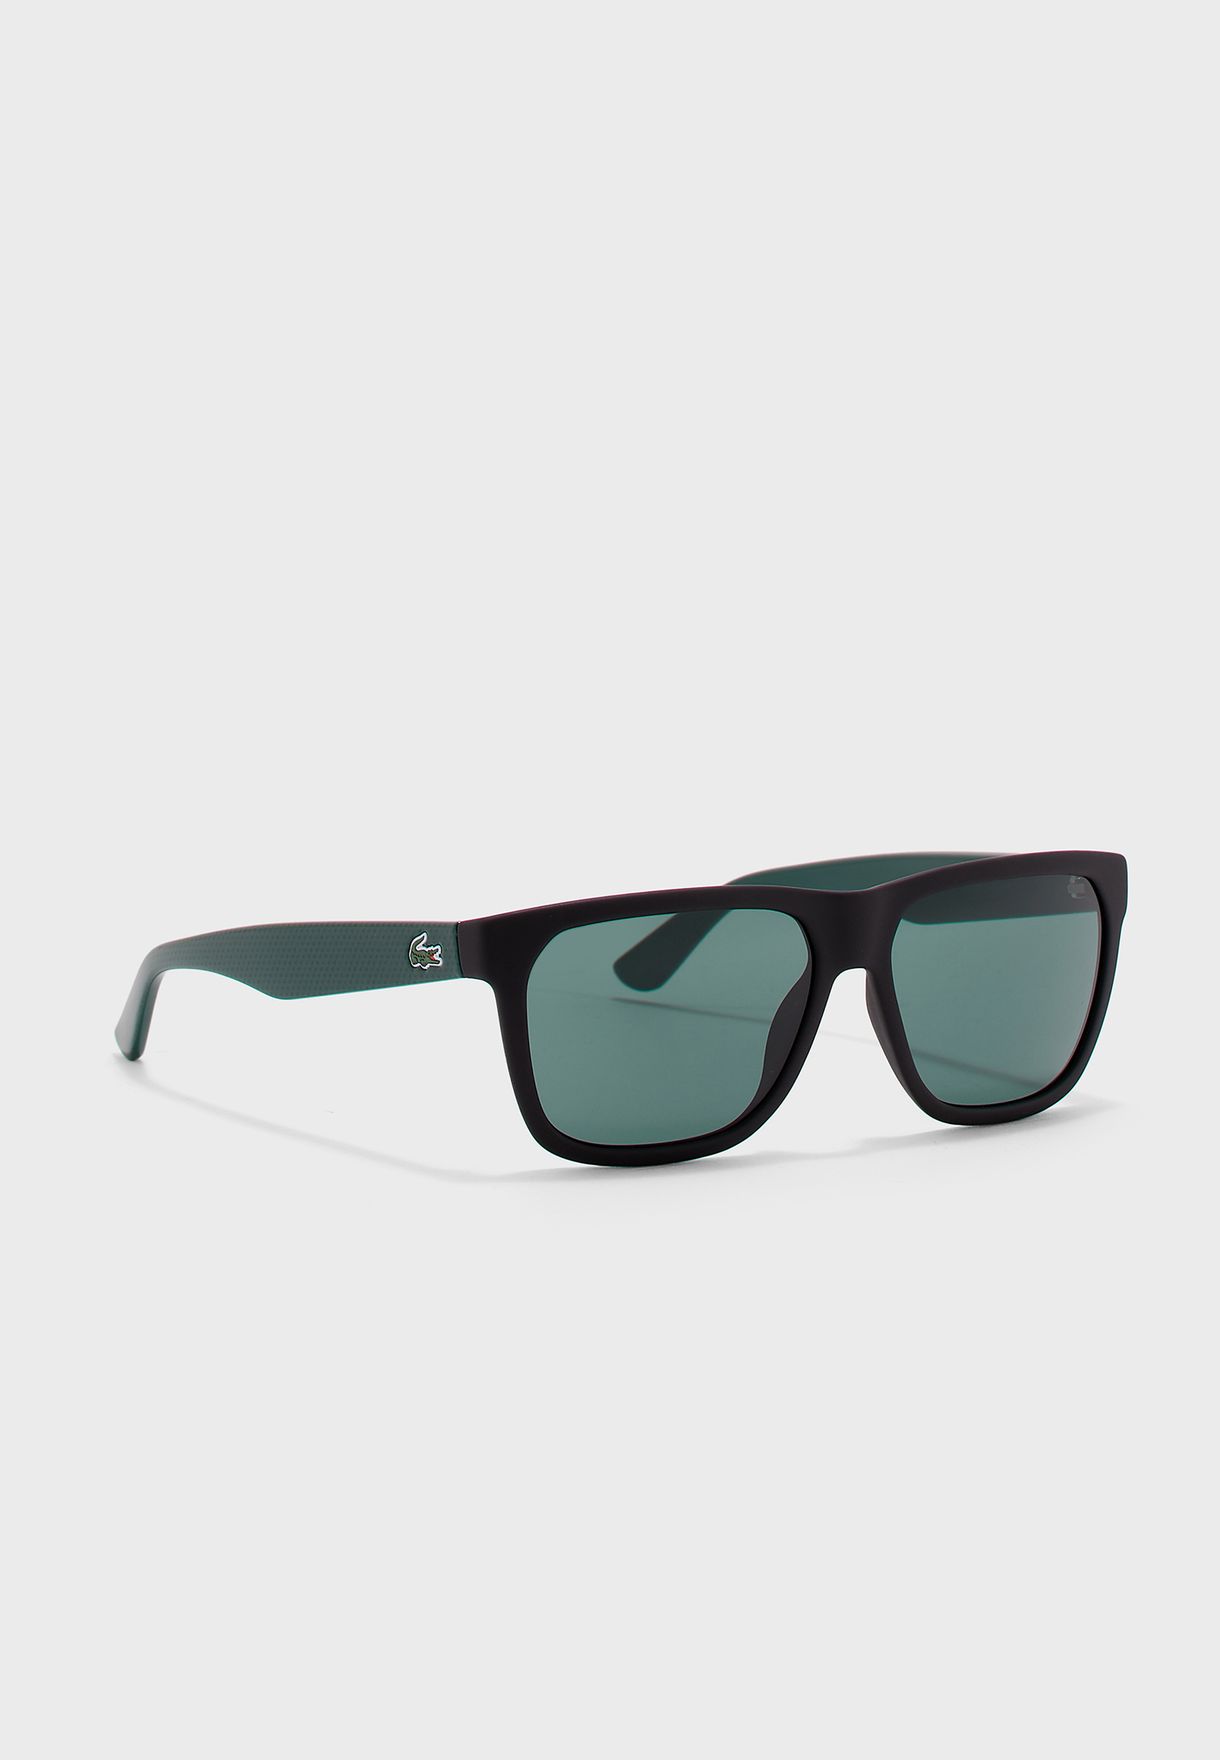 lacoste sunglasses square